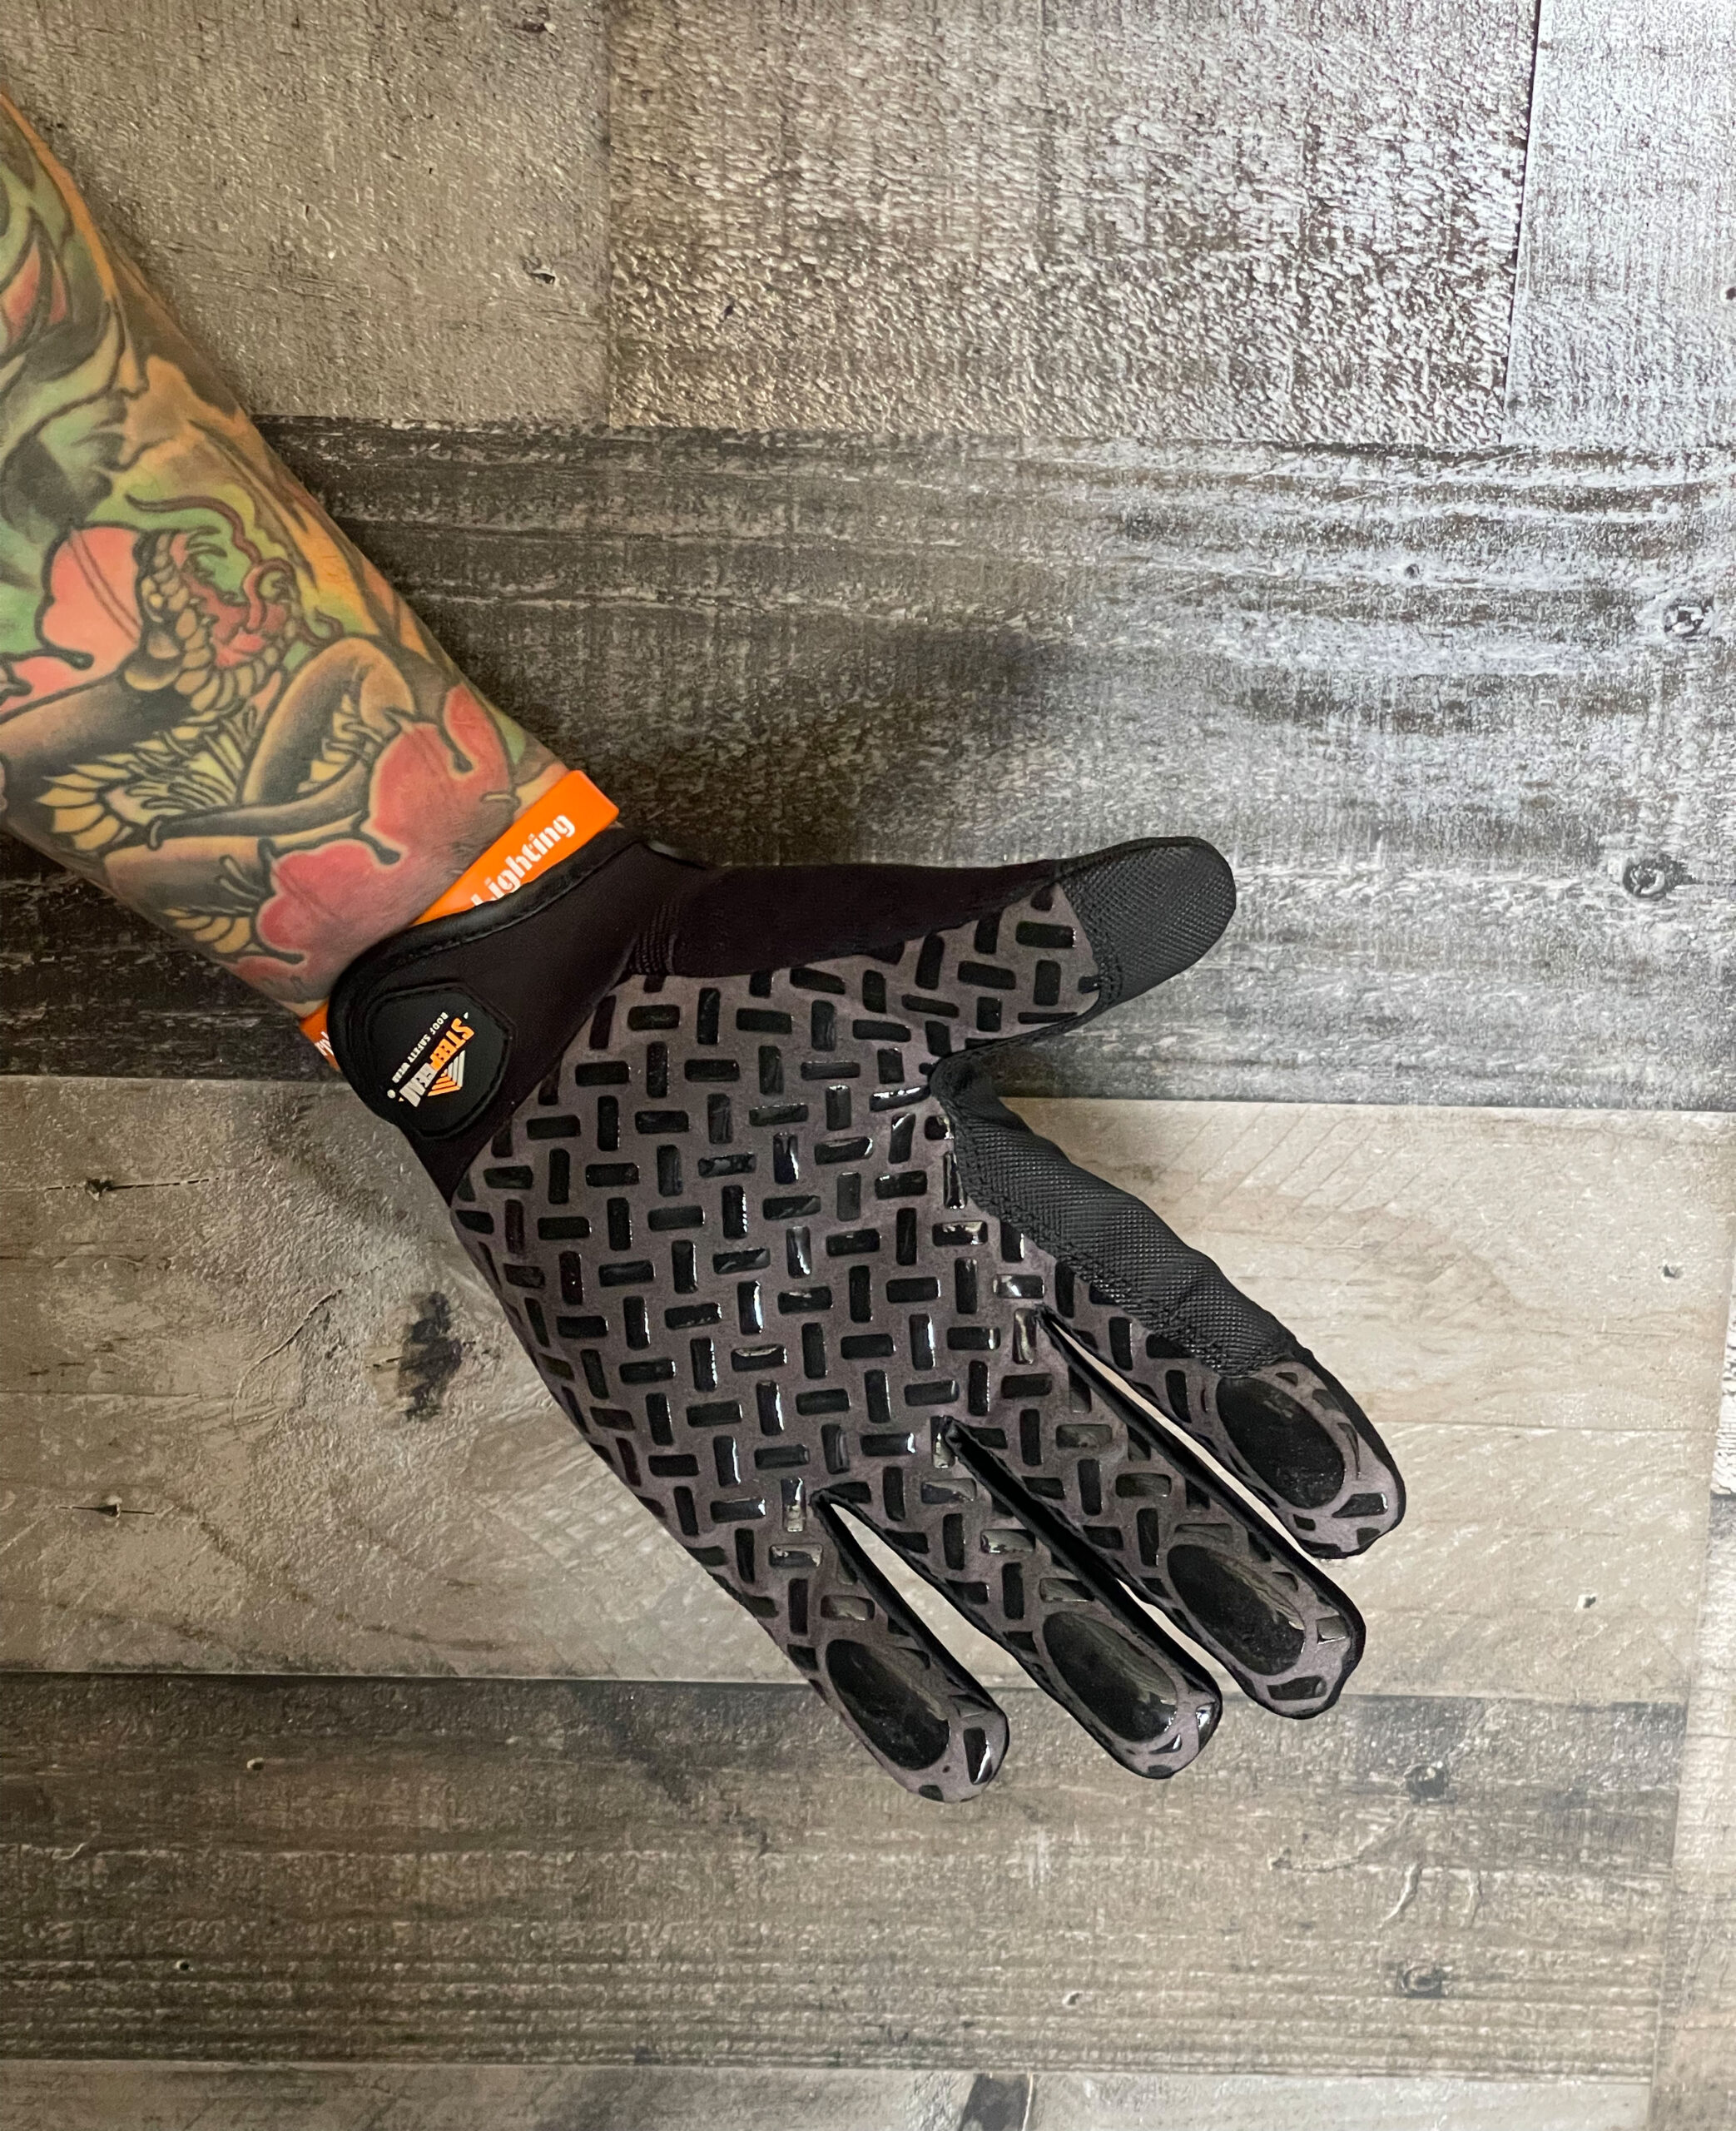 SteepGear Gloves